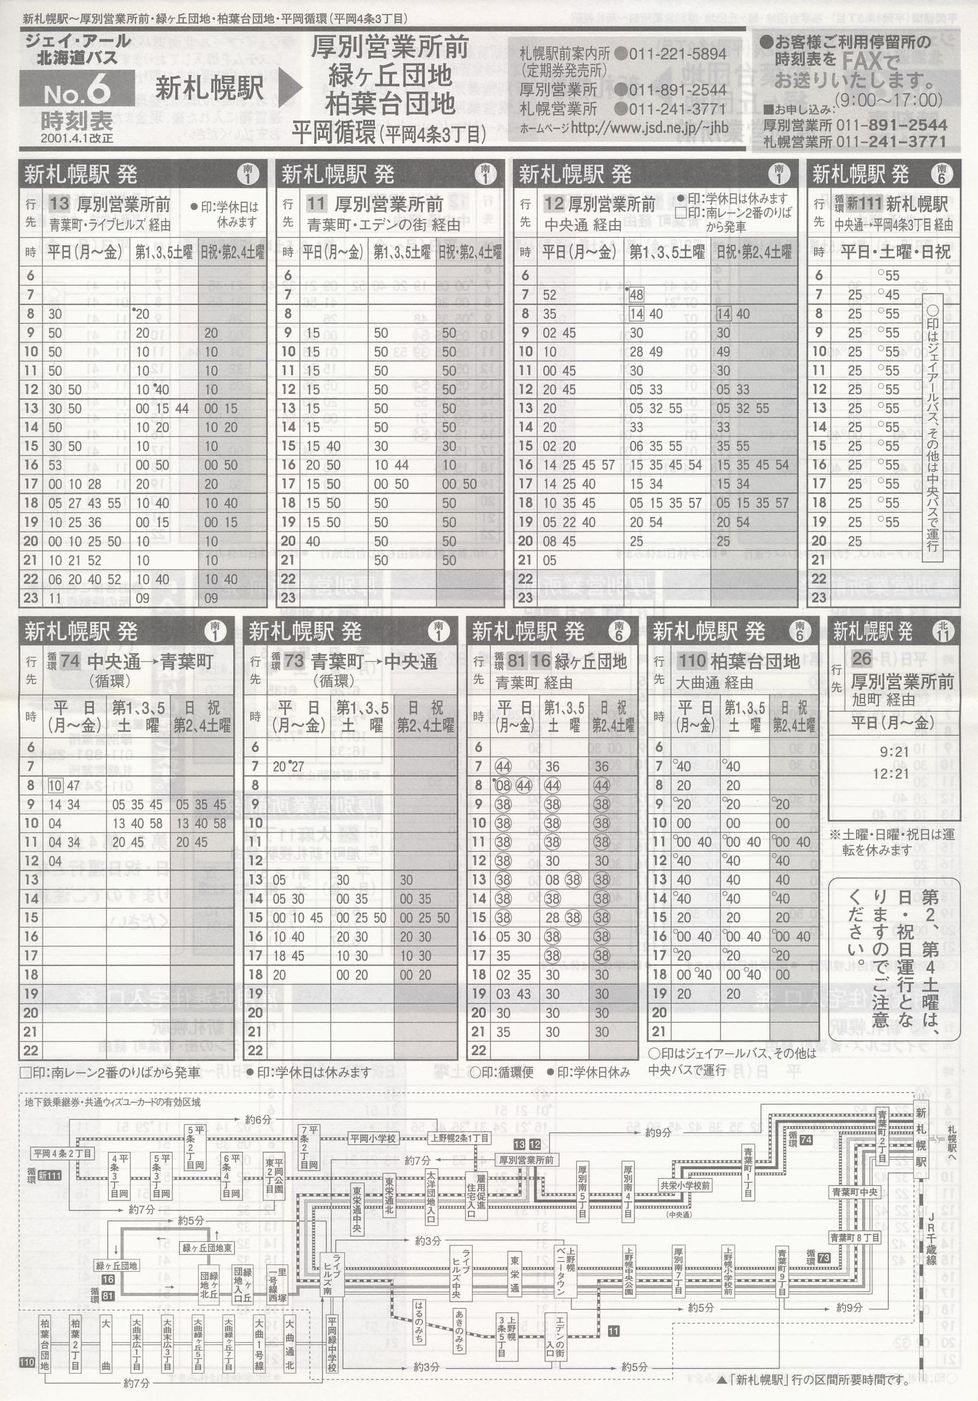 2001-04-01改正_ジェイ・アール北海道バス_空知線時刻表６裏面